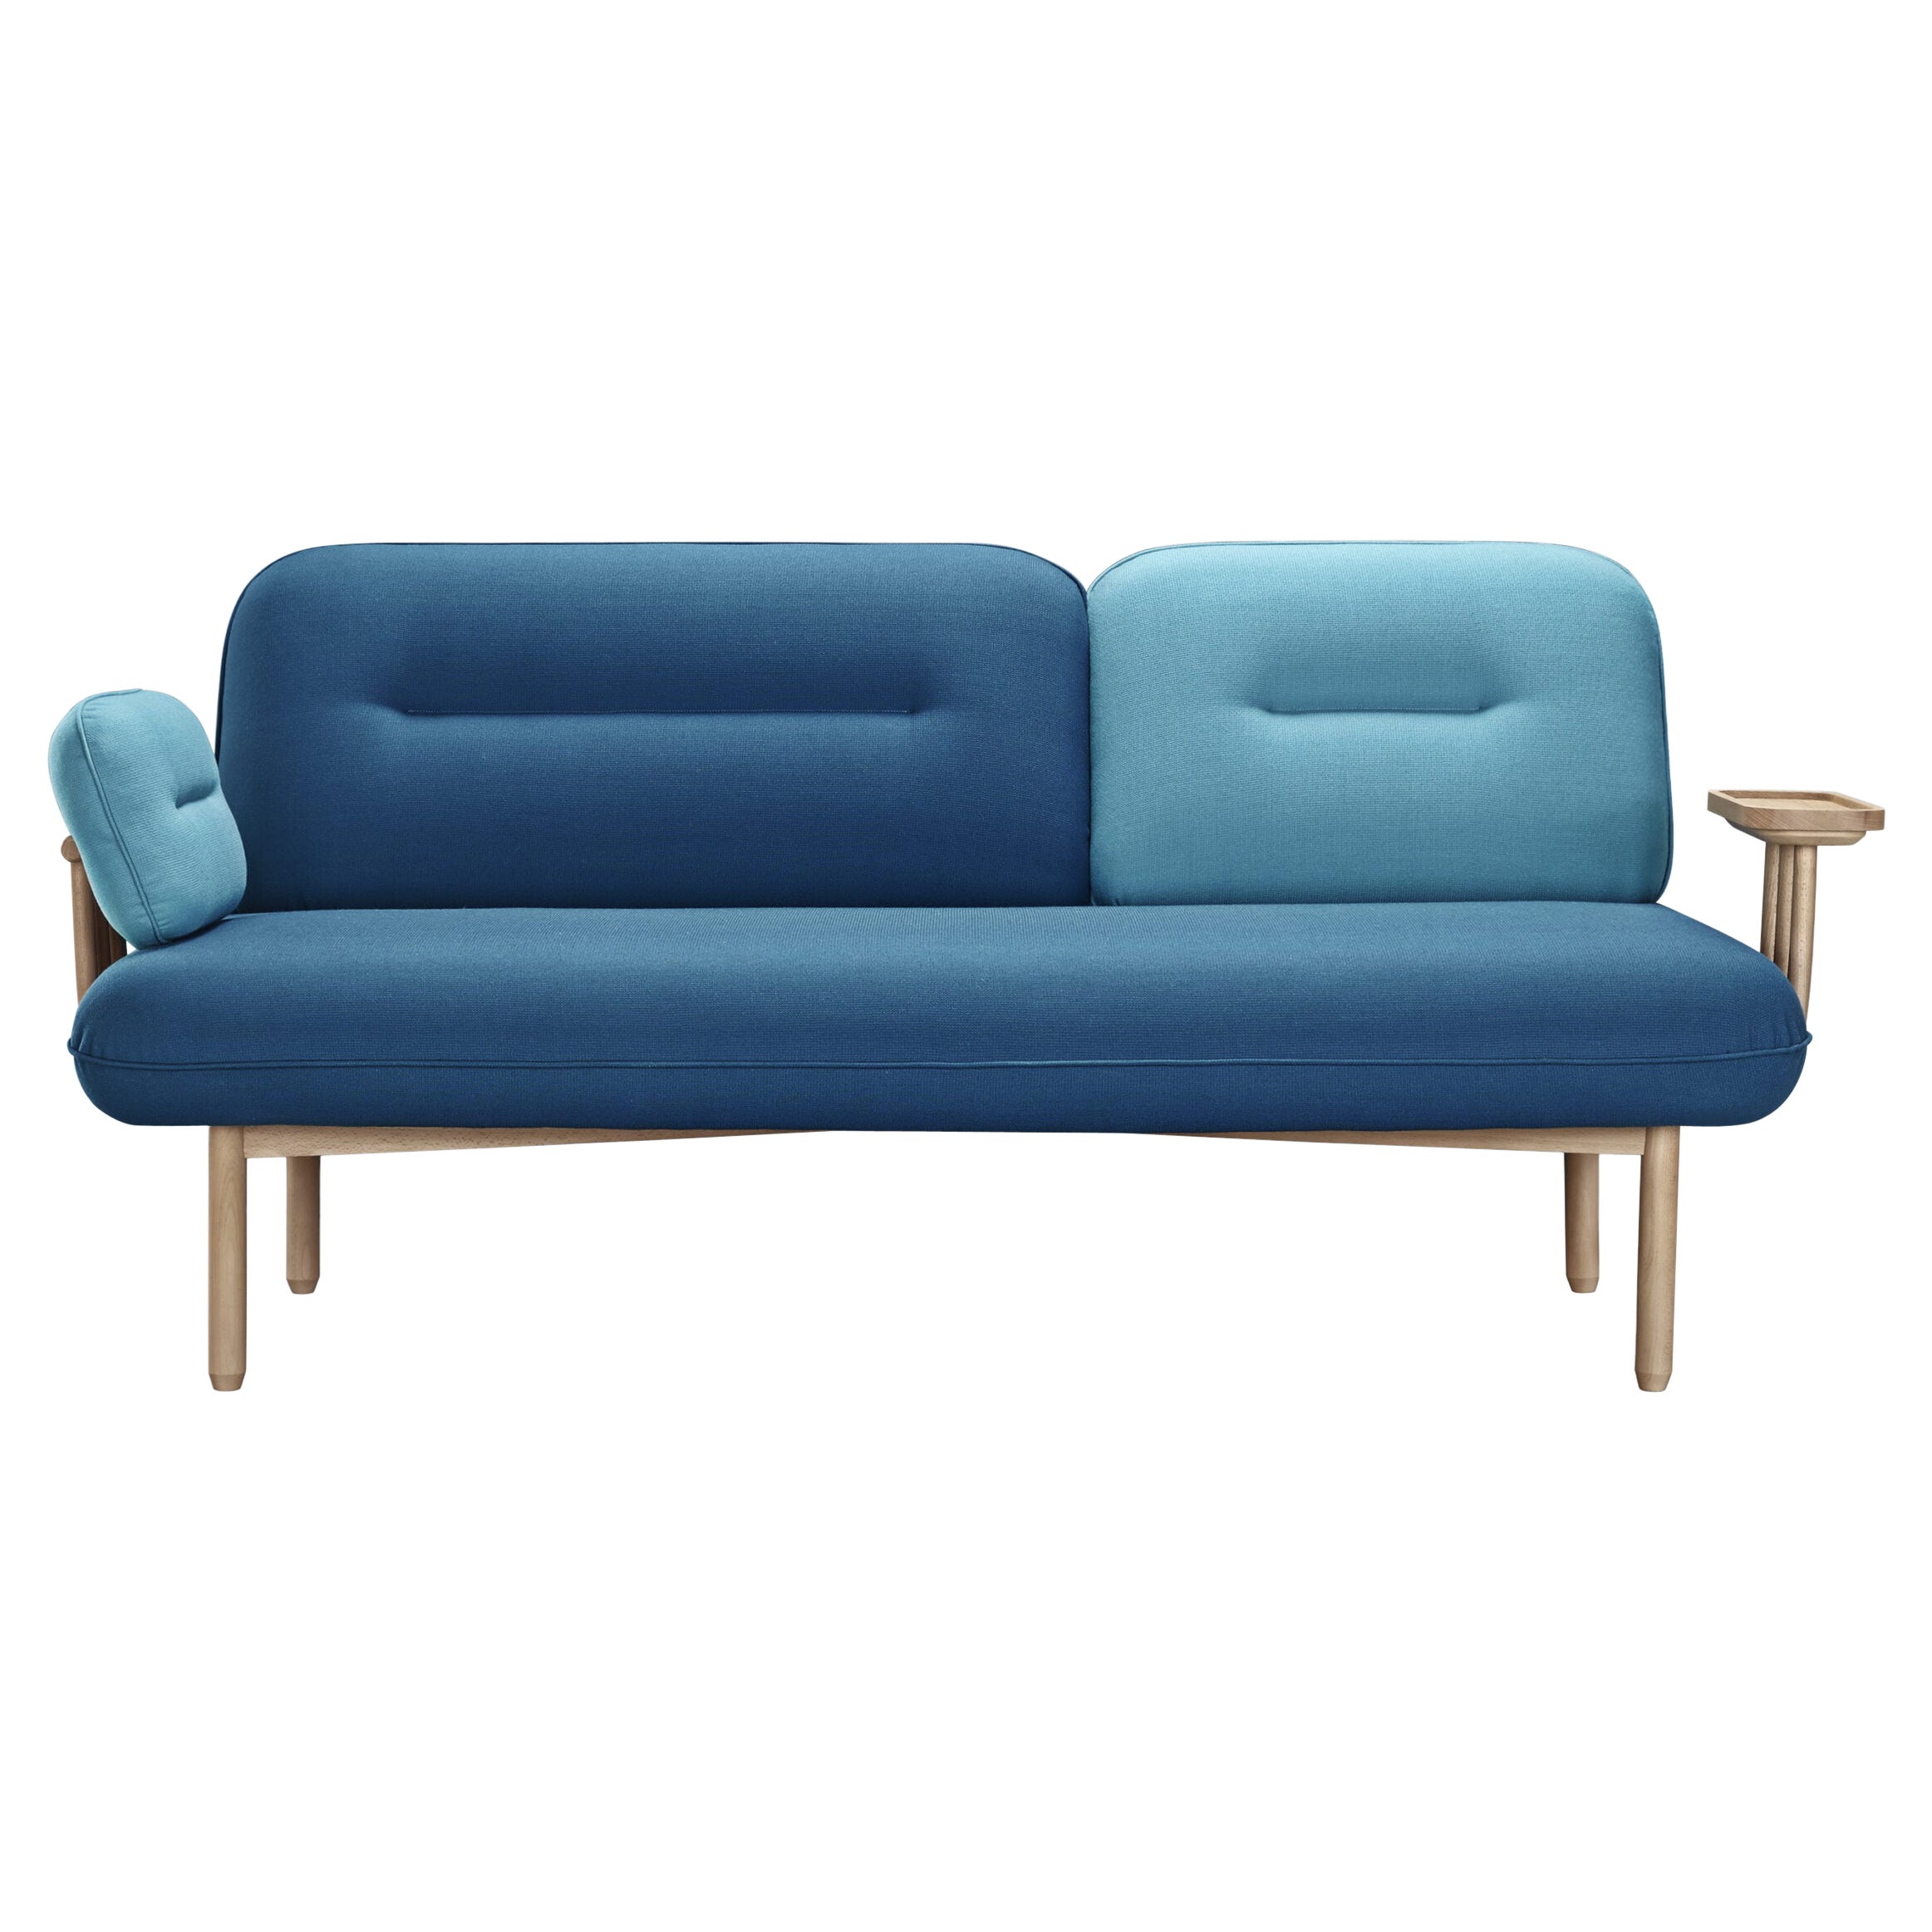 Blue Cosmo Sofa by La Selva